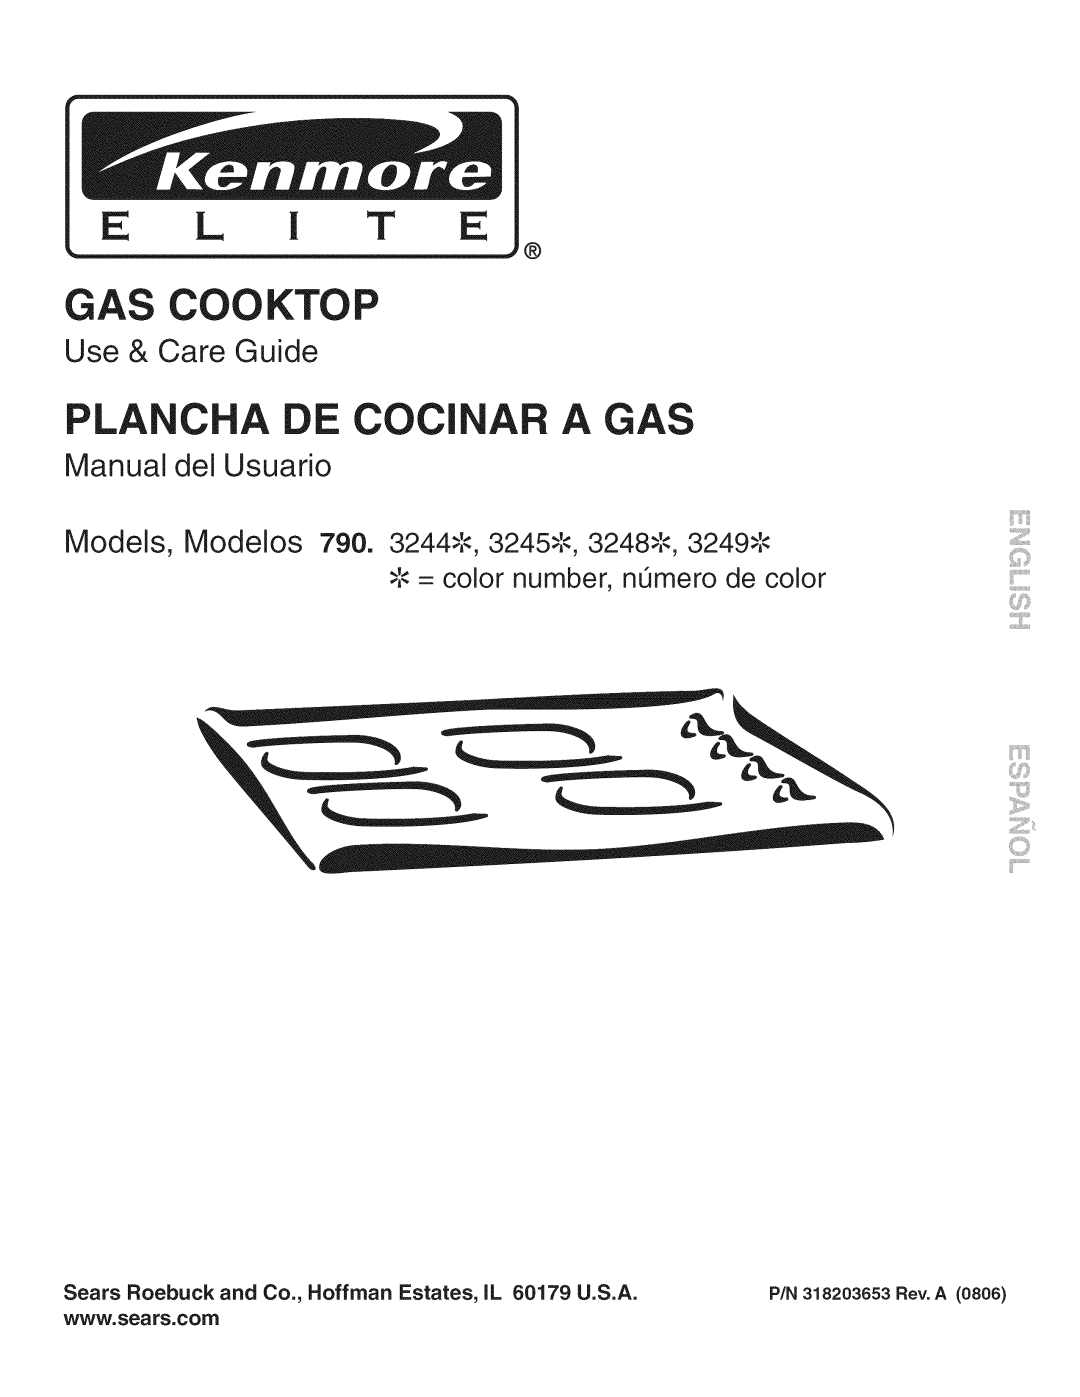 Kenmore 790.3244, 790.7971 manual Use & Care Guide, Manual del Usuario, Models, Modelos 790. 3244.,-,3245.,-,3248.,-,3249 